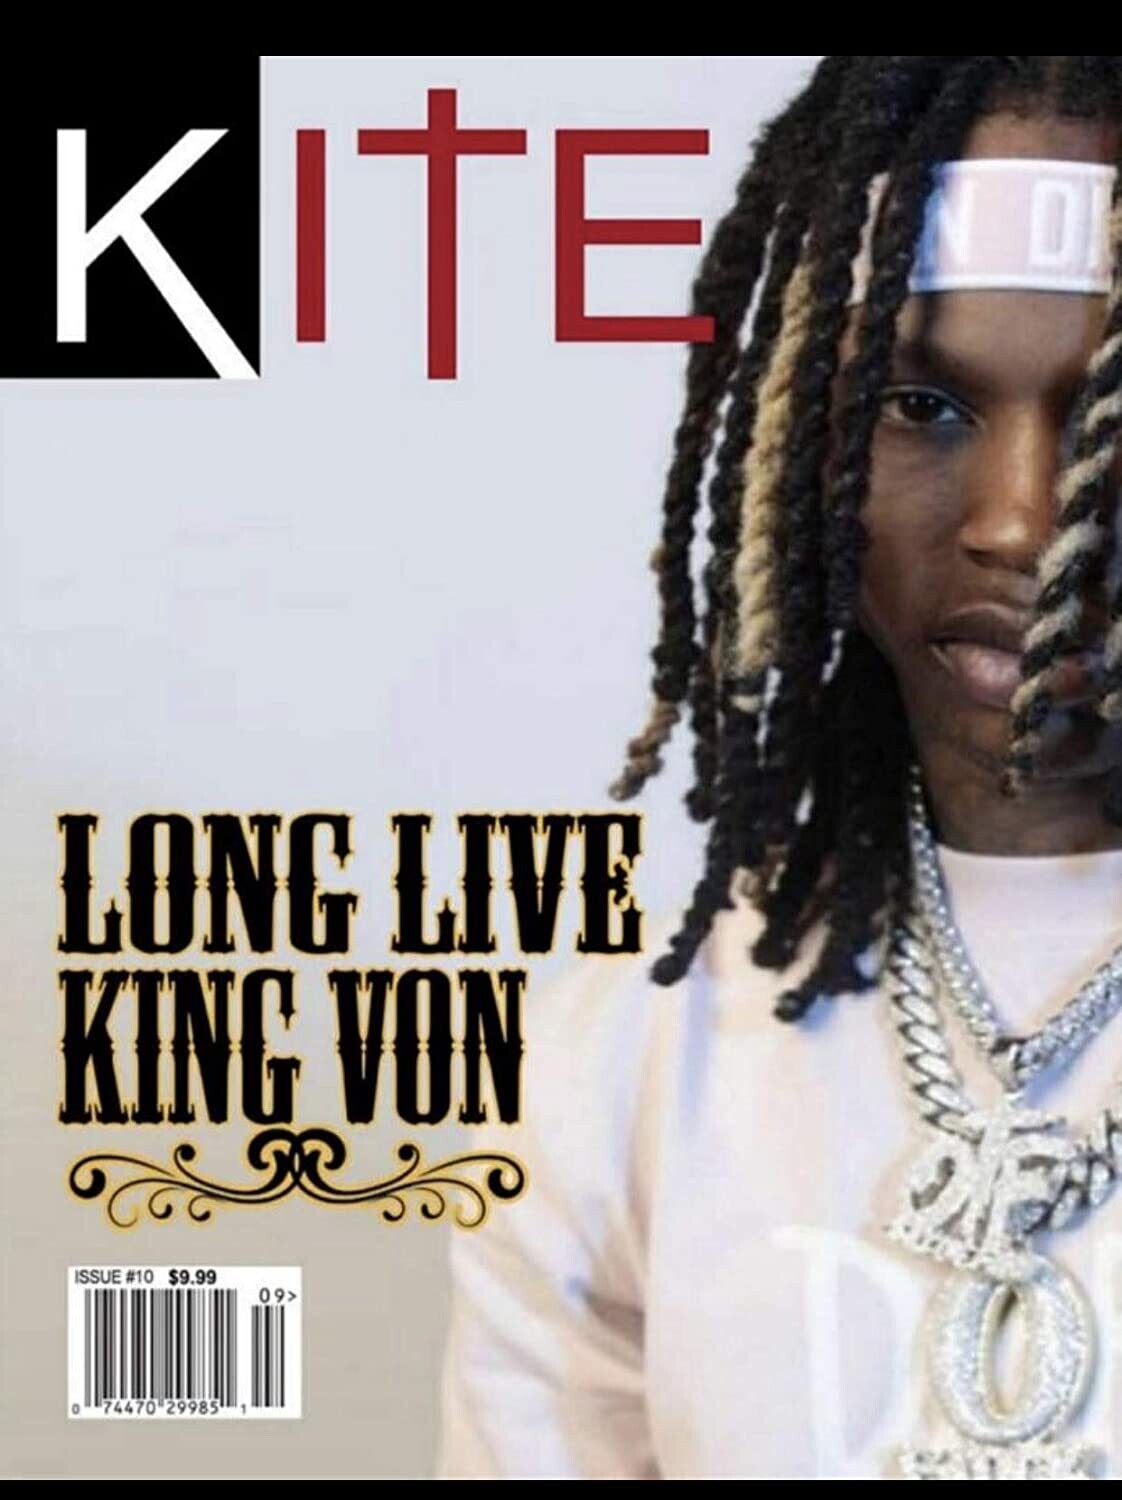 Kite Magazine Issue 10 Year King Von